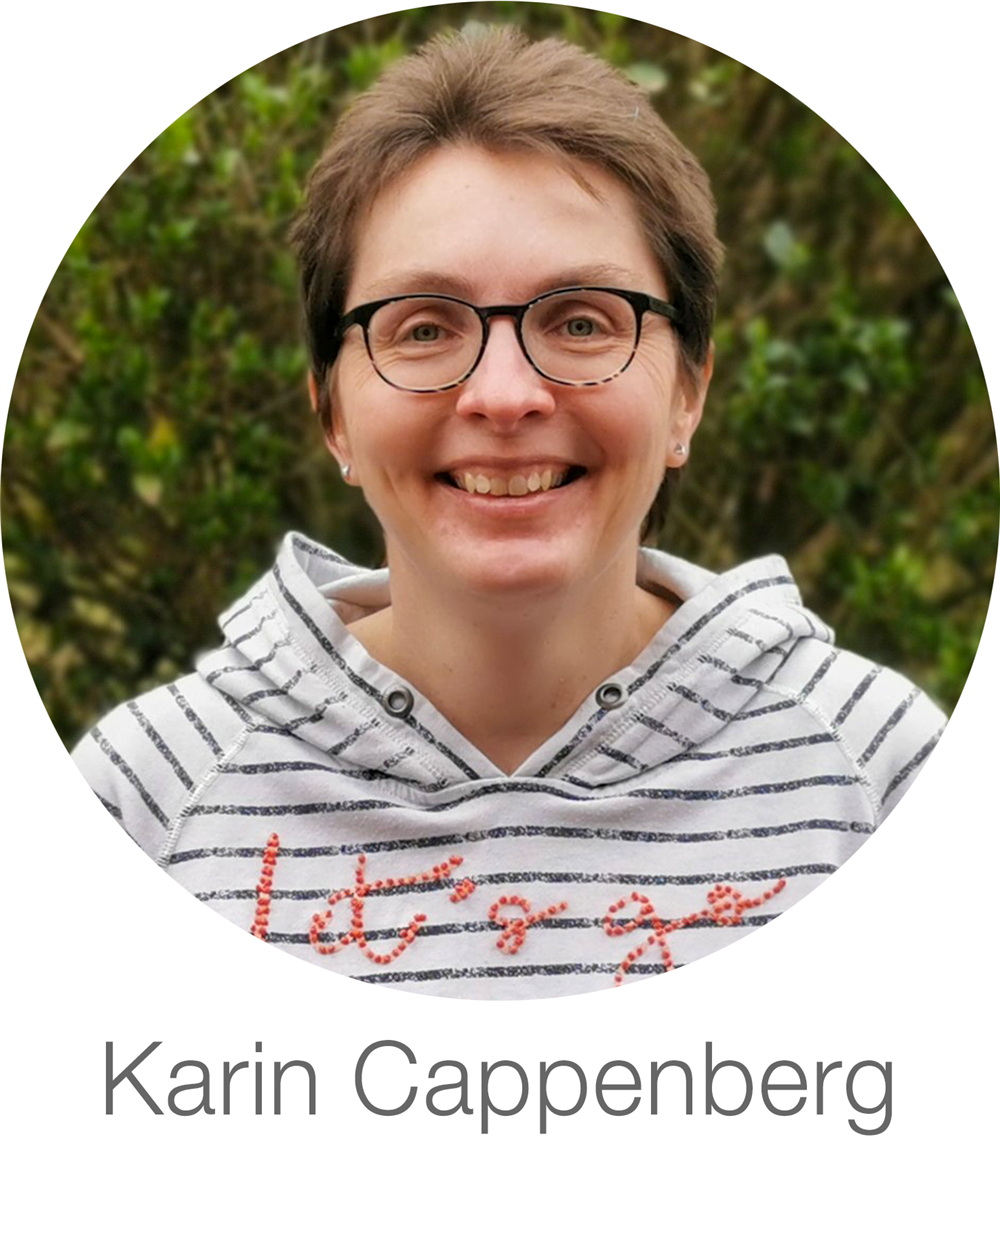 Karin Cappenberg